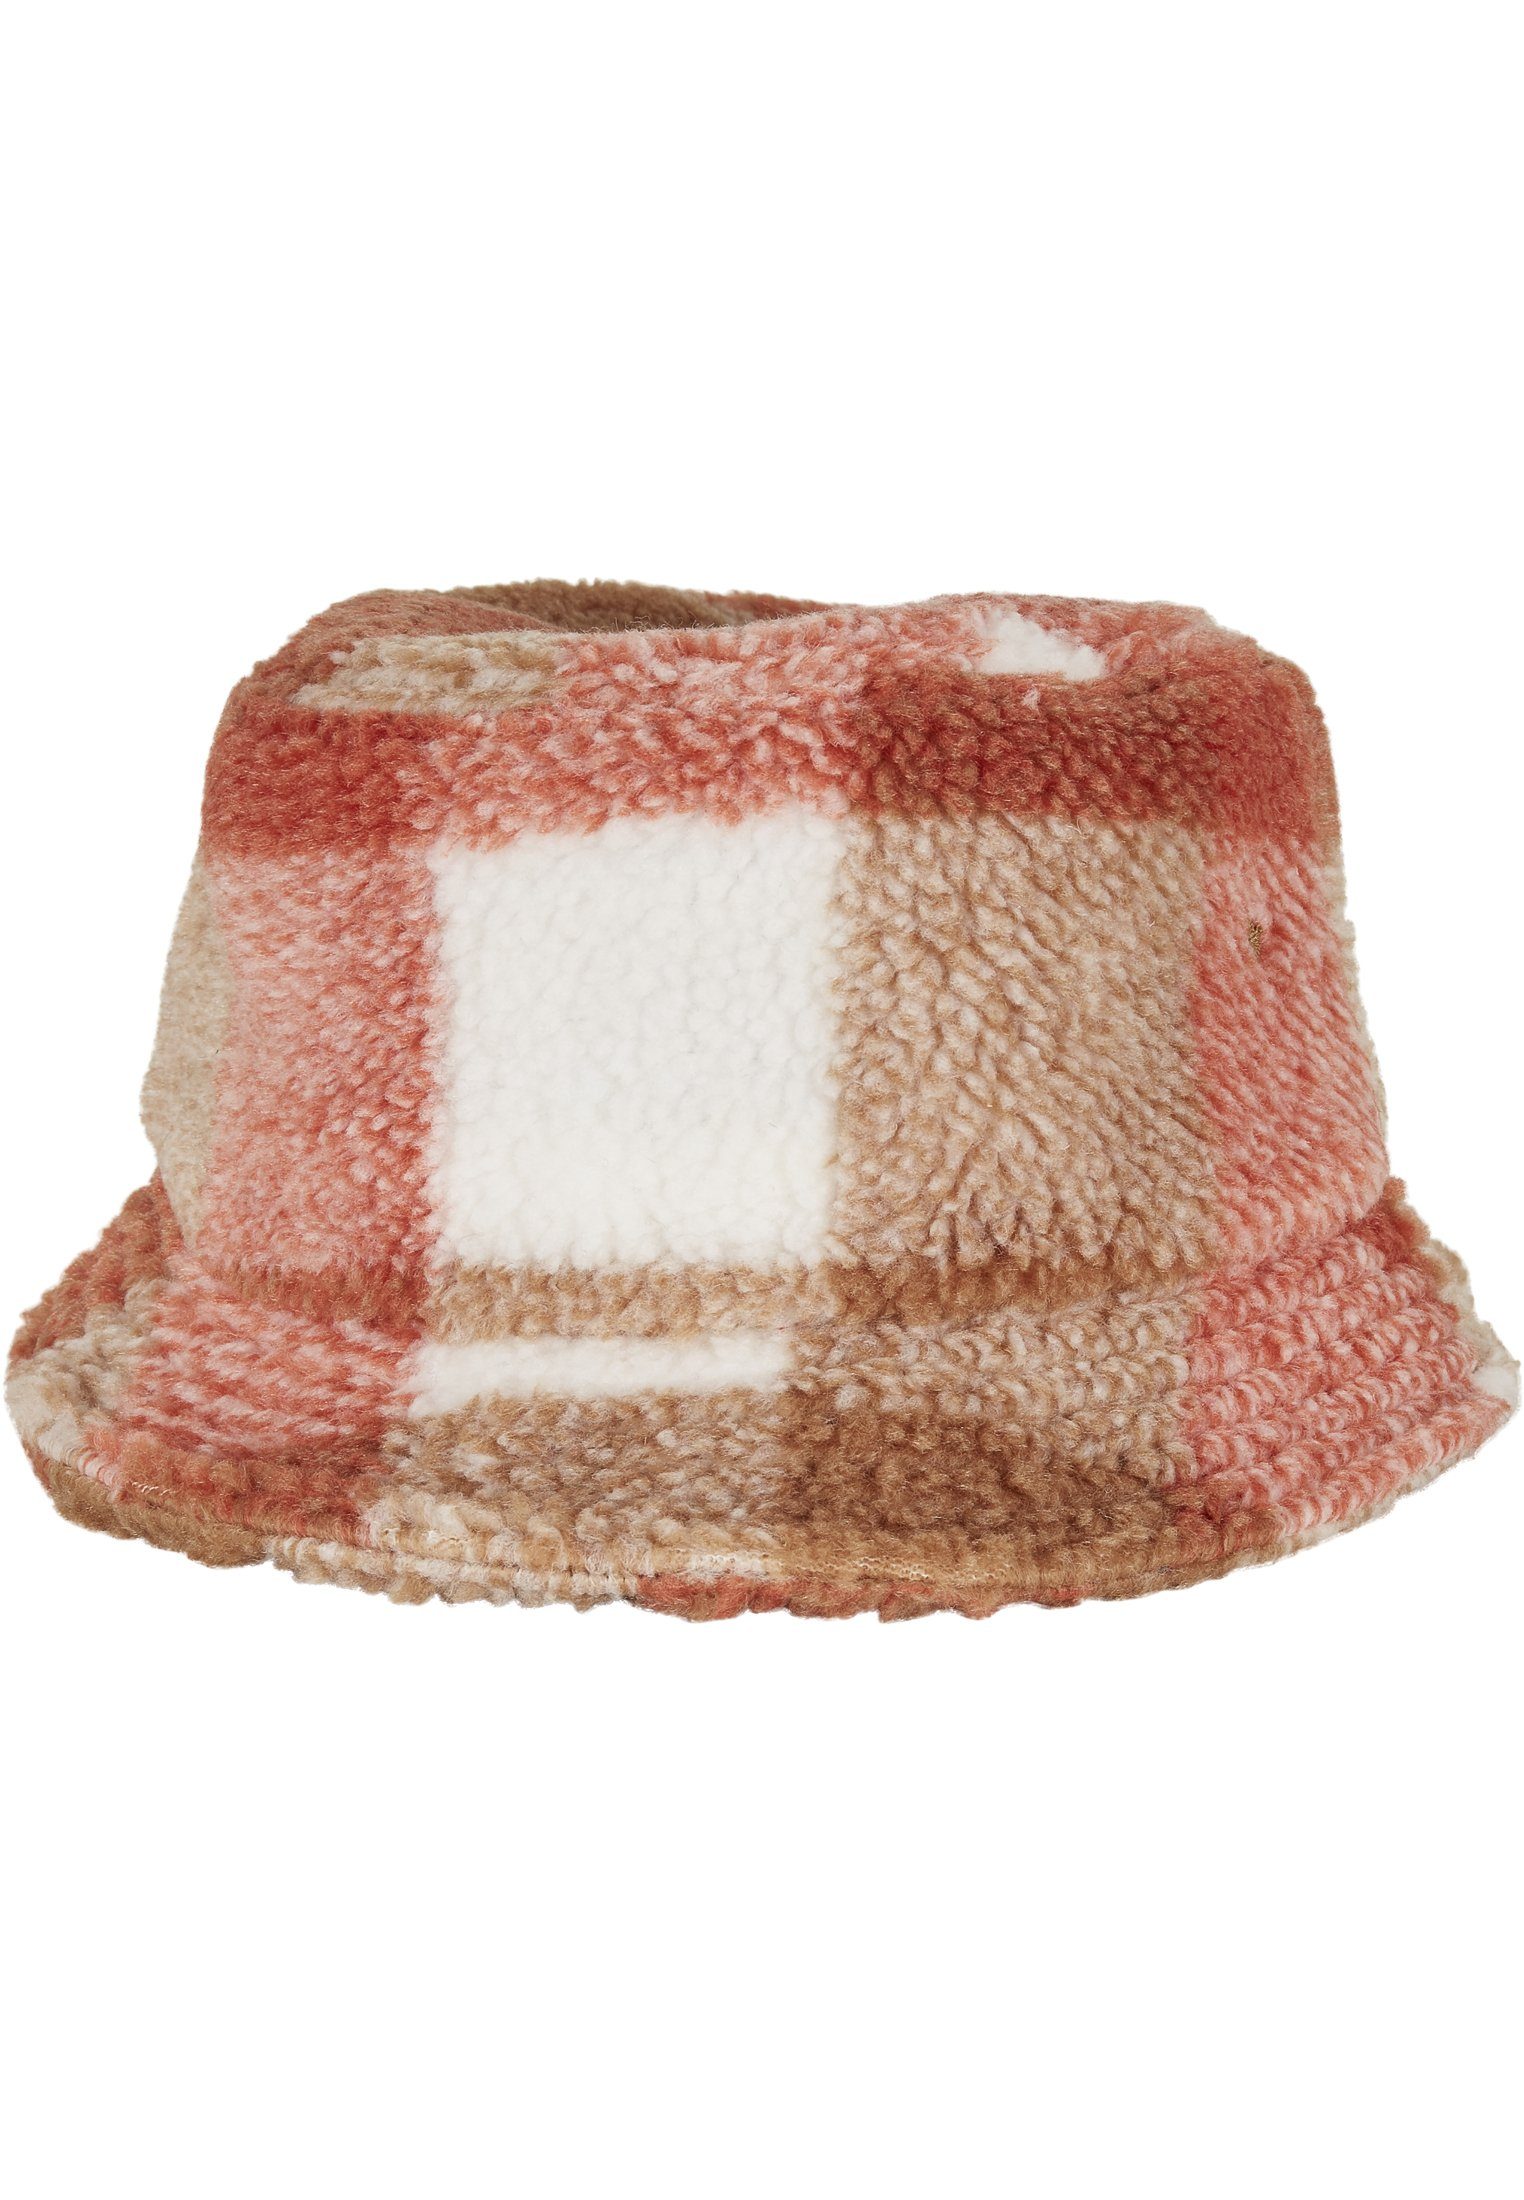 Bucket Flexfit whitesand/toffee Check Sherpa Hat Hat Bucket Flex Cap